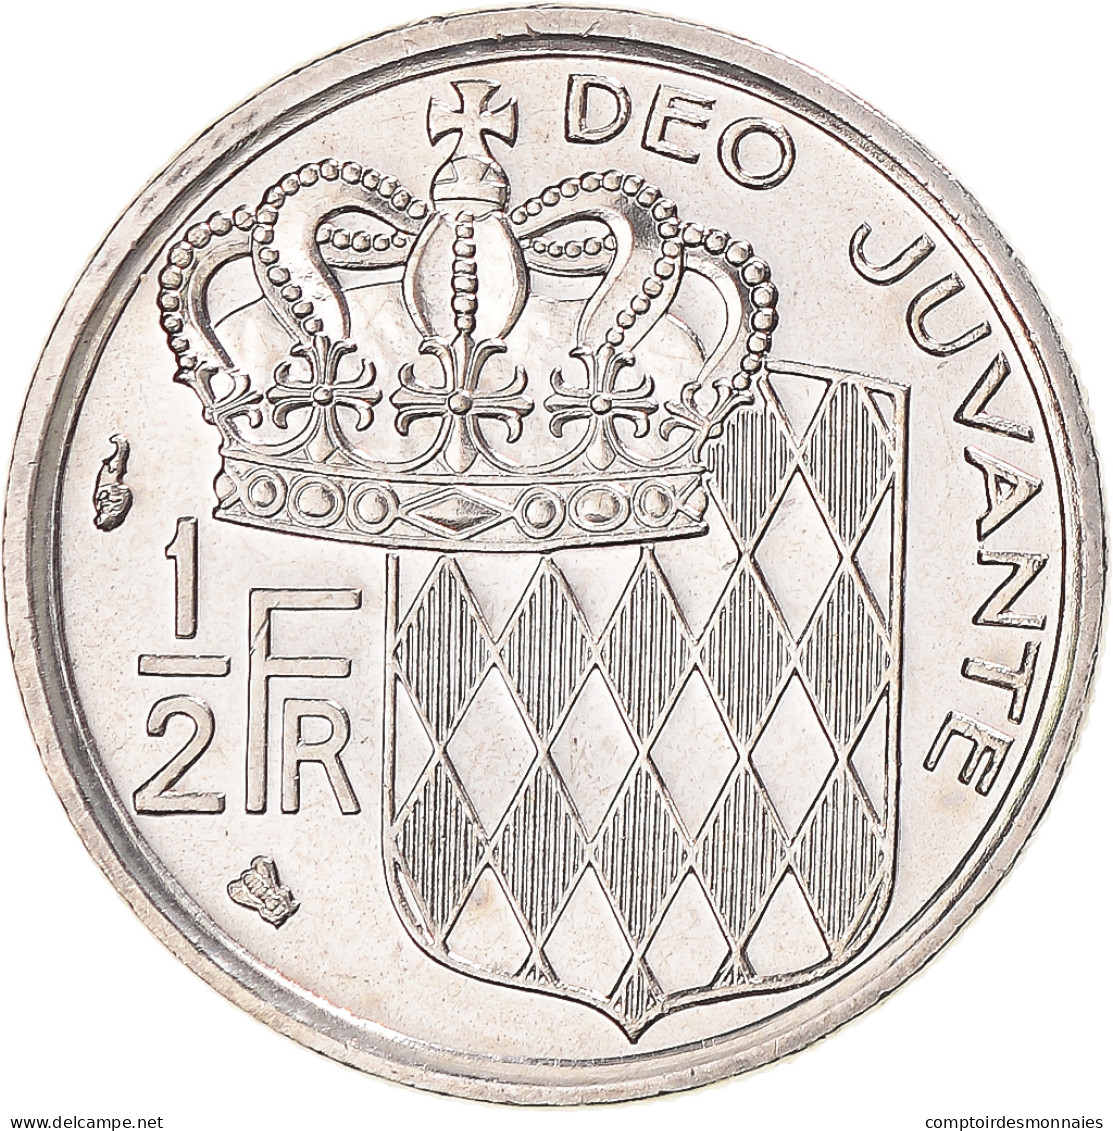 Monnaie, Monaco, Rainier III, 1/2 Franc, 1995, Paris, BU, FDC, Nickel - 1960-2001 Nouveaux Francs